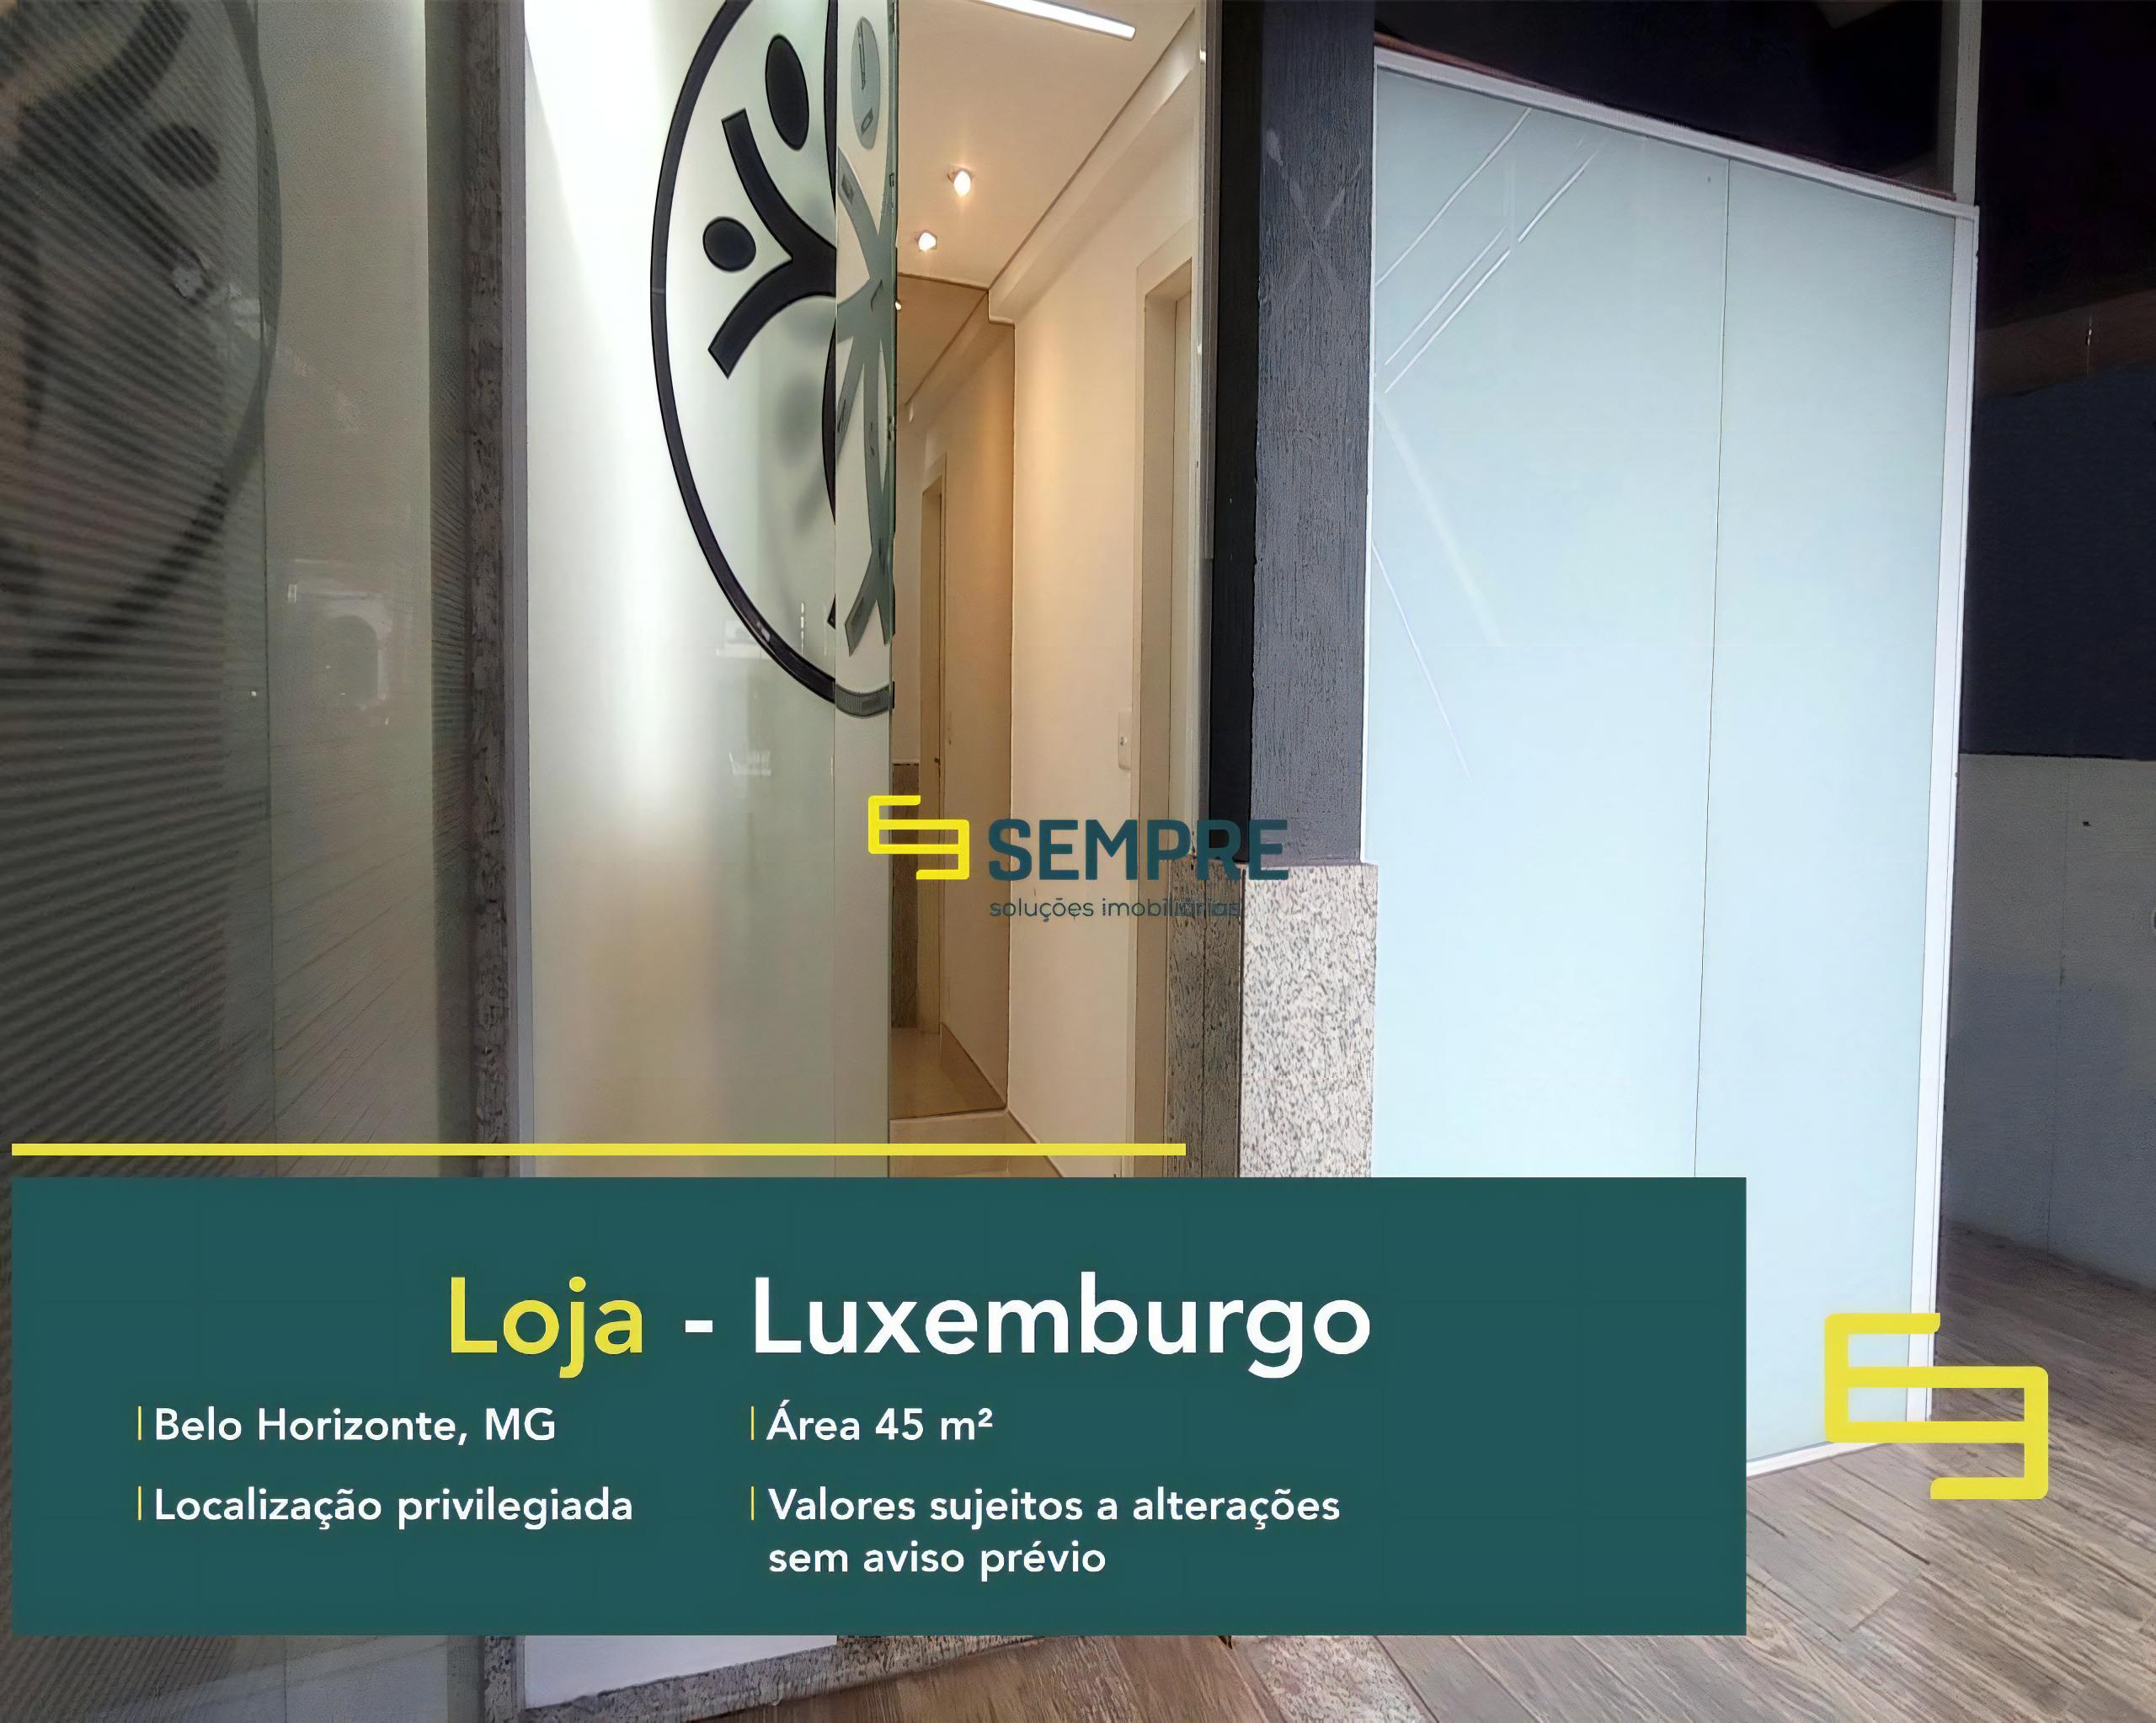 Loja para alugar no Luxemburgo em Belo Horizonte, em excelente localização. O estabelecimento comercial conta com área de 45 m².